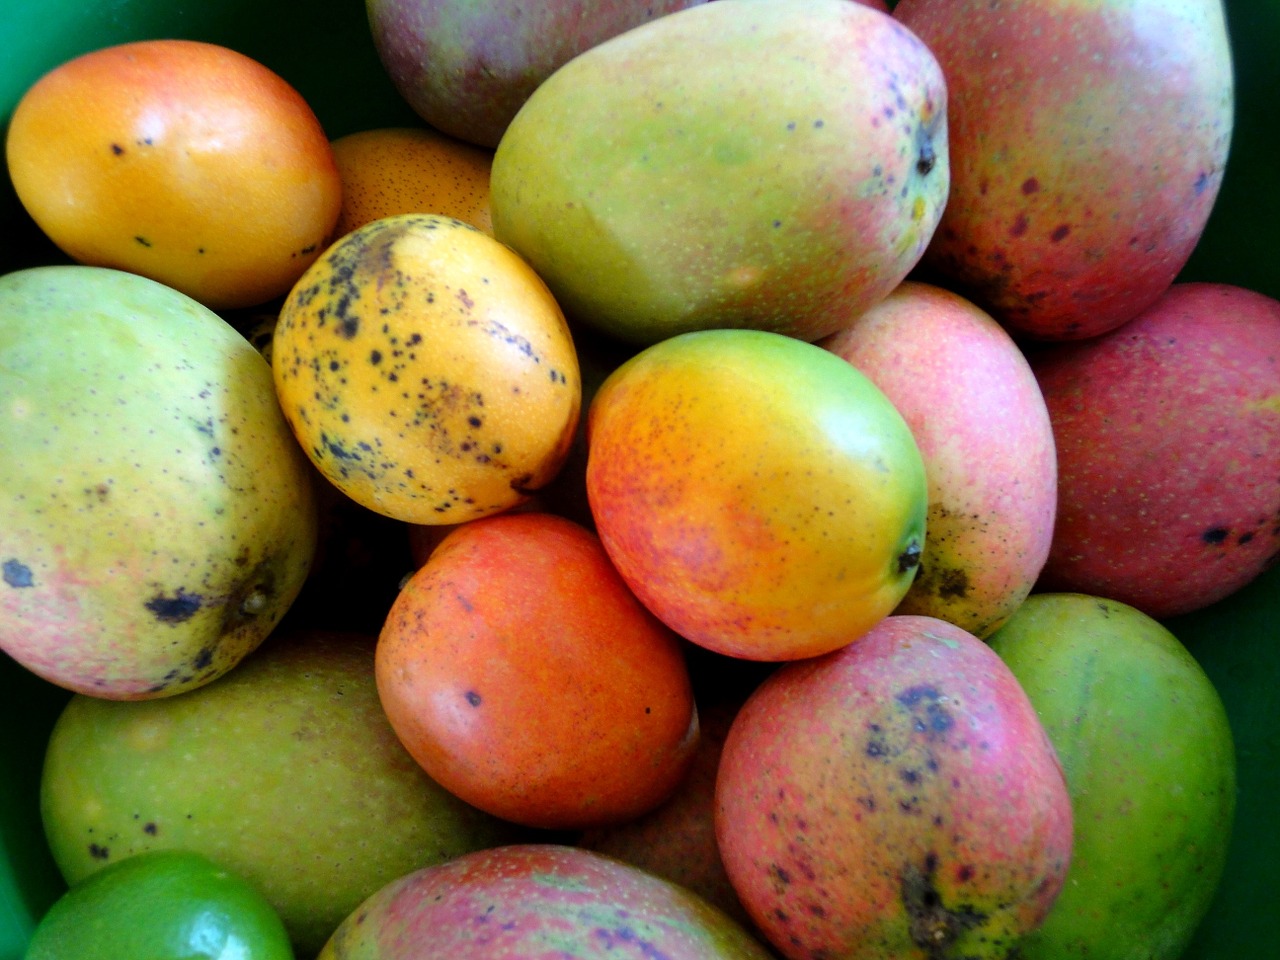 Mango and Papaya Smoothie